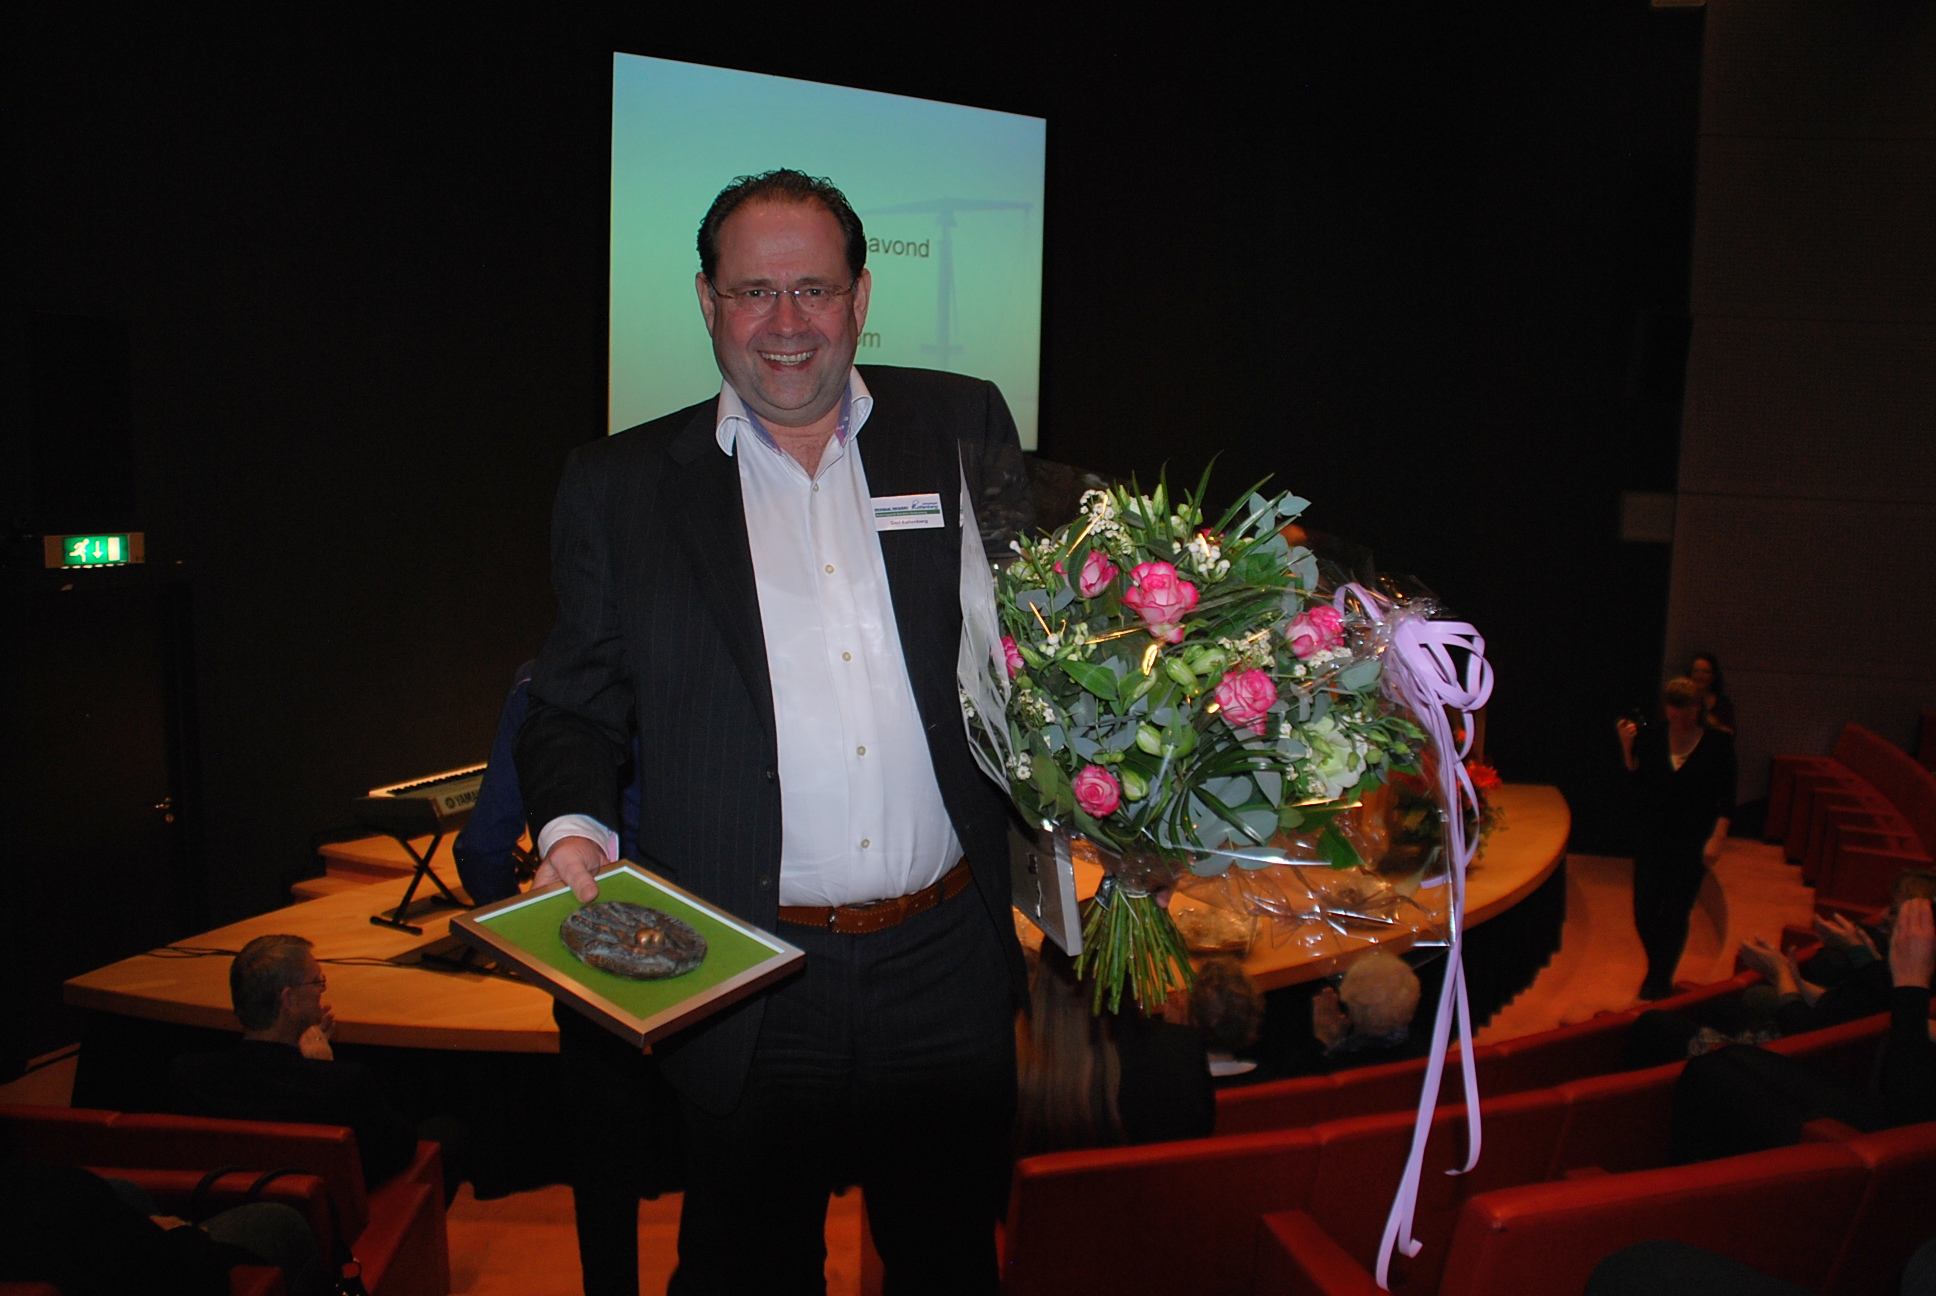 Directeur Mondial Kattenberg wint Vrijwilligersprijs 2011 voor inzet